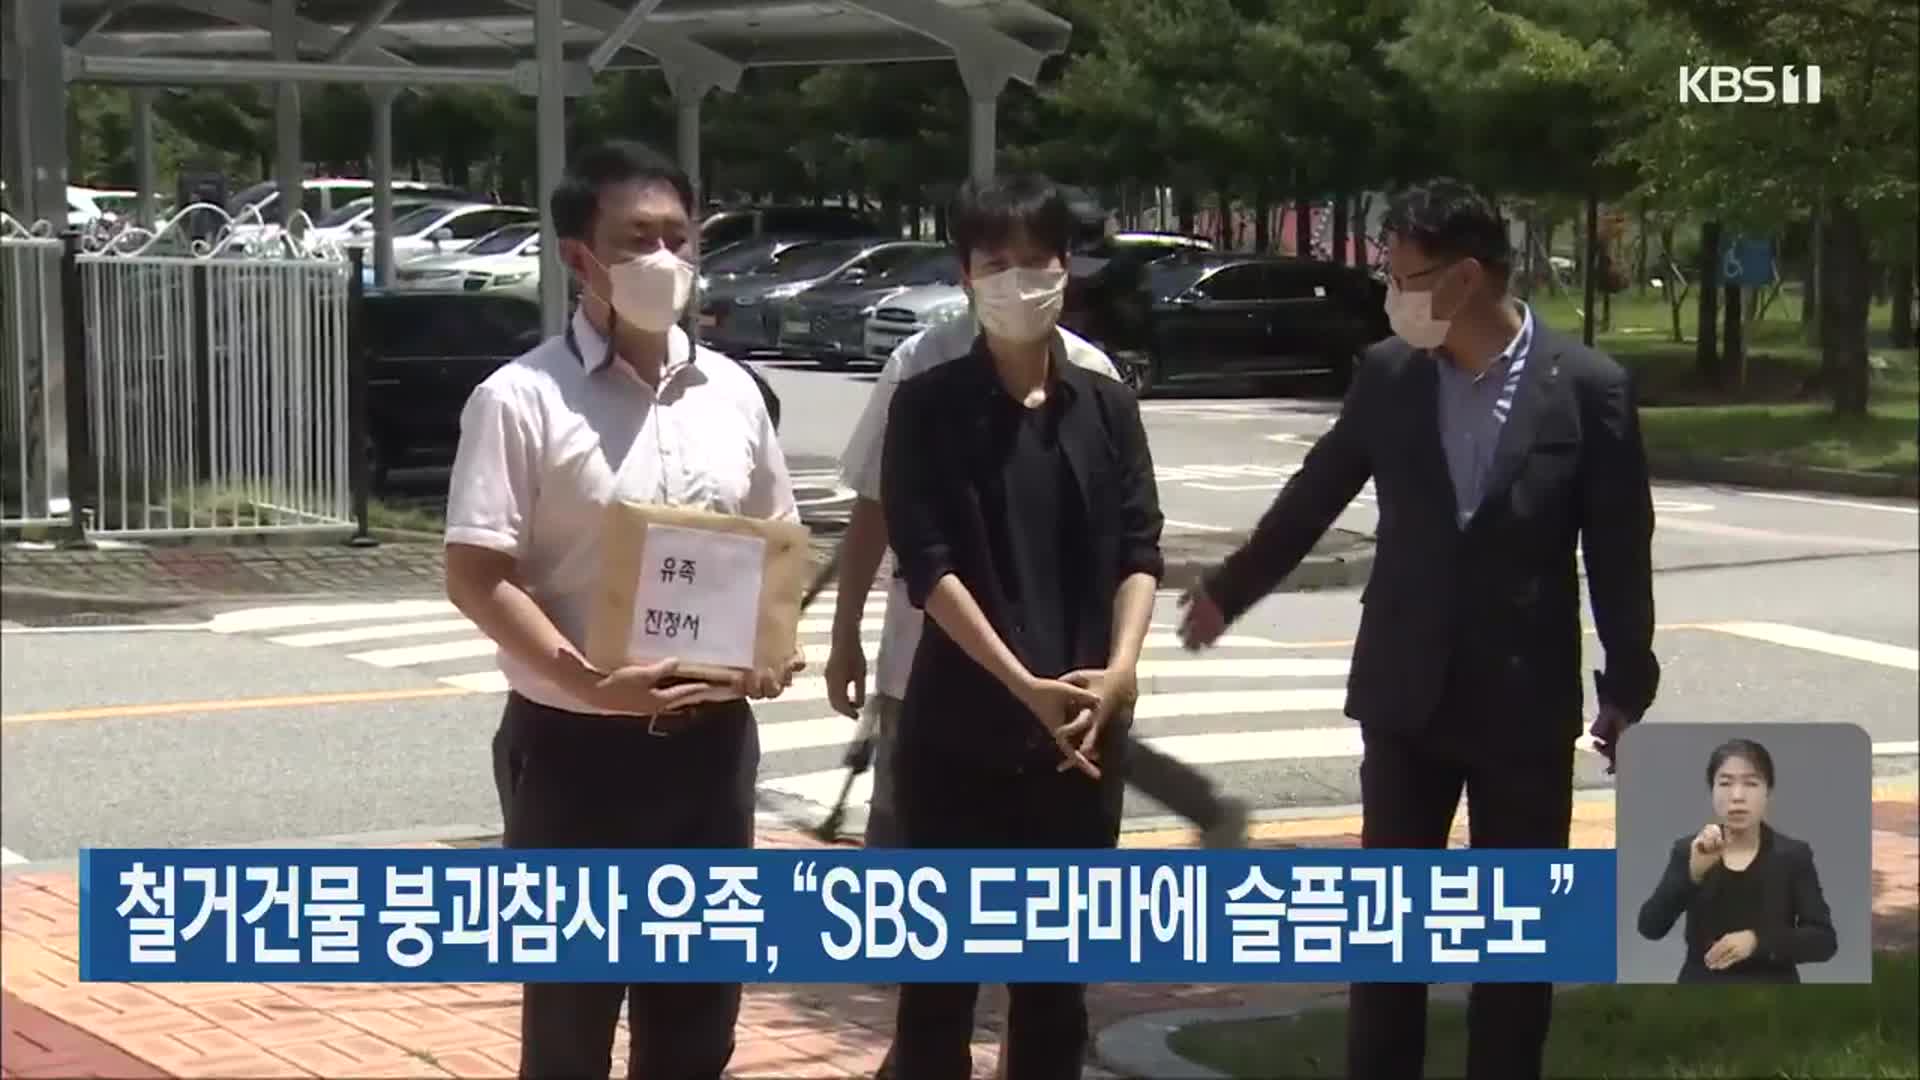 철거건물 붕괴참사 유족, “SBS 드라마에 슬픔과 분노”